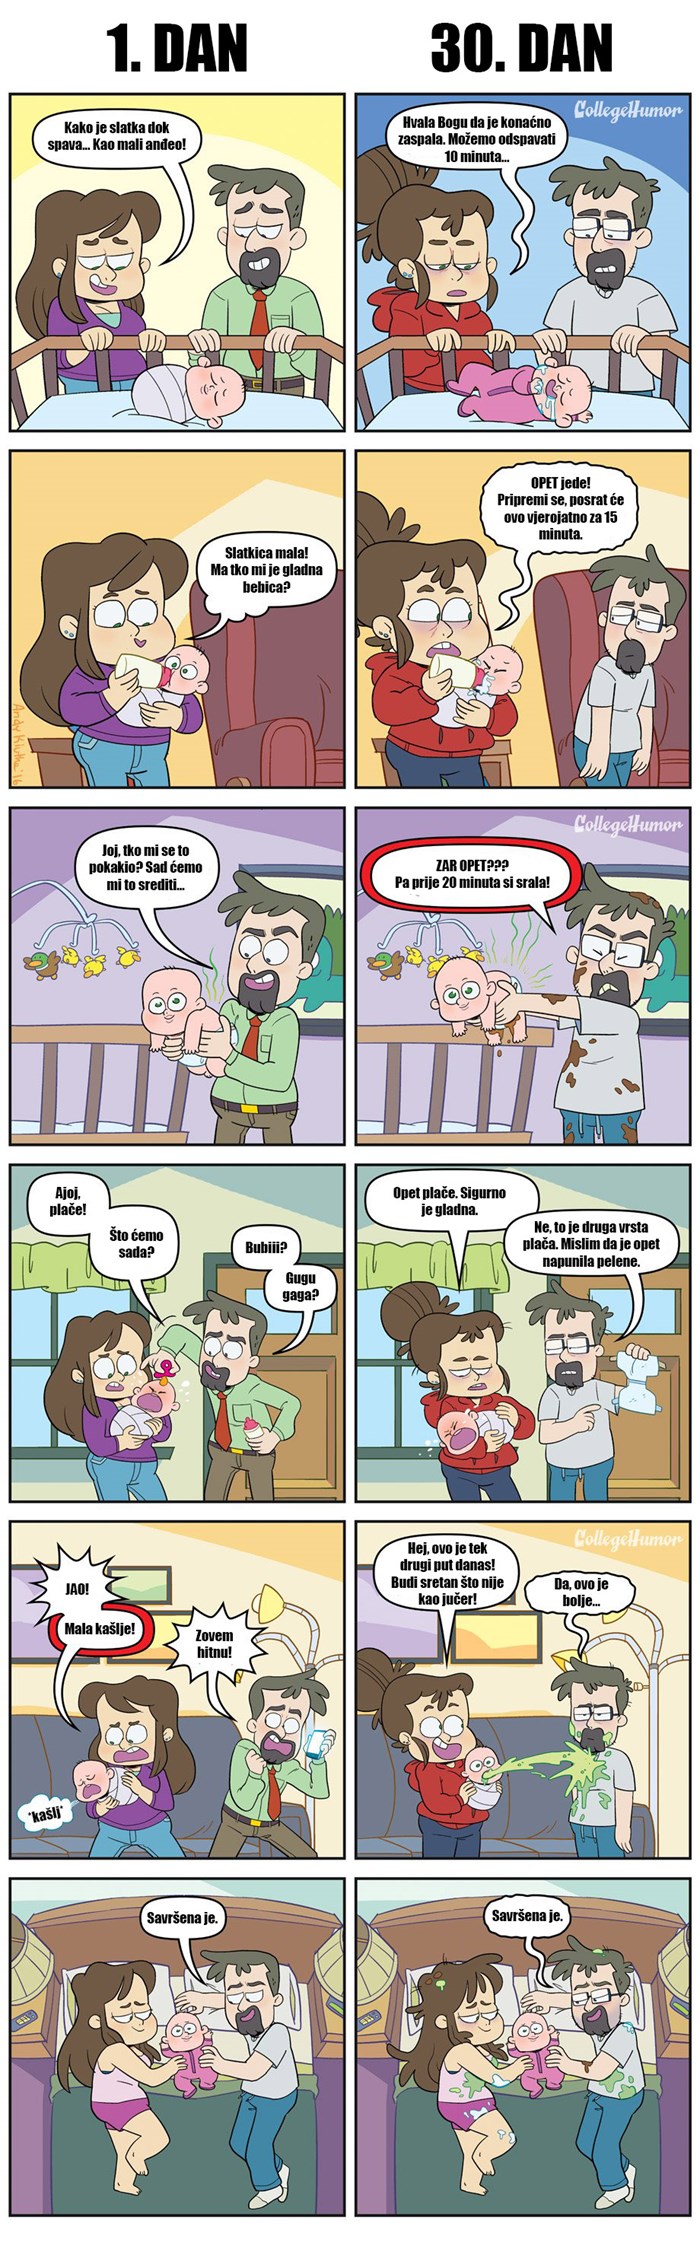 Nije lako biti roditelj: Strip pokazuje kako izgleda život s bebom nakon mjesec dana